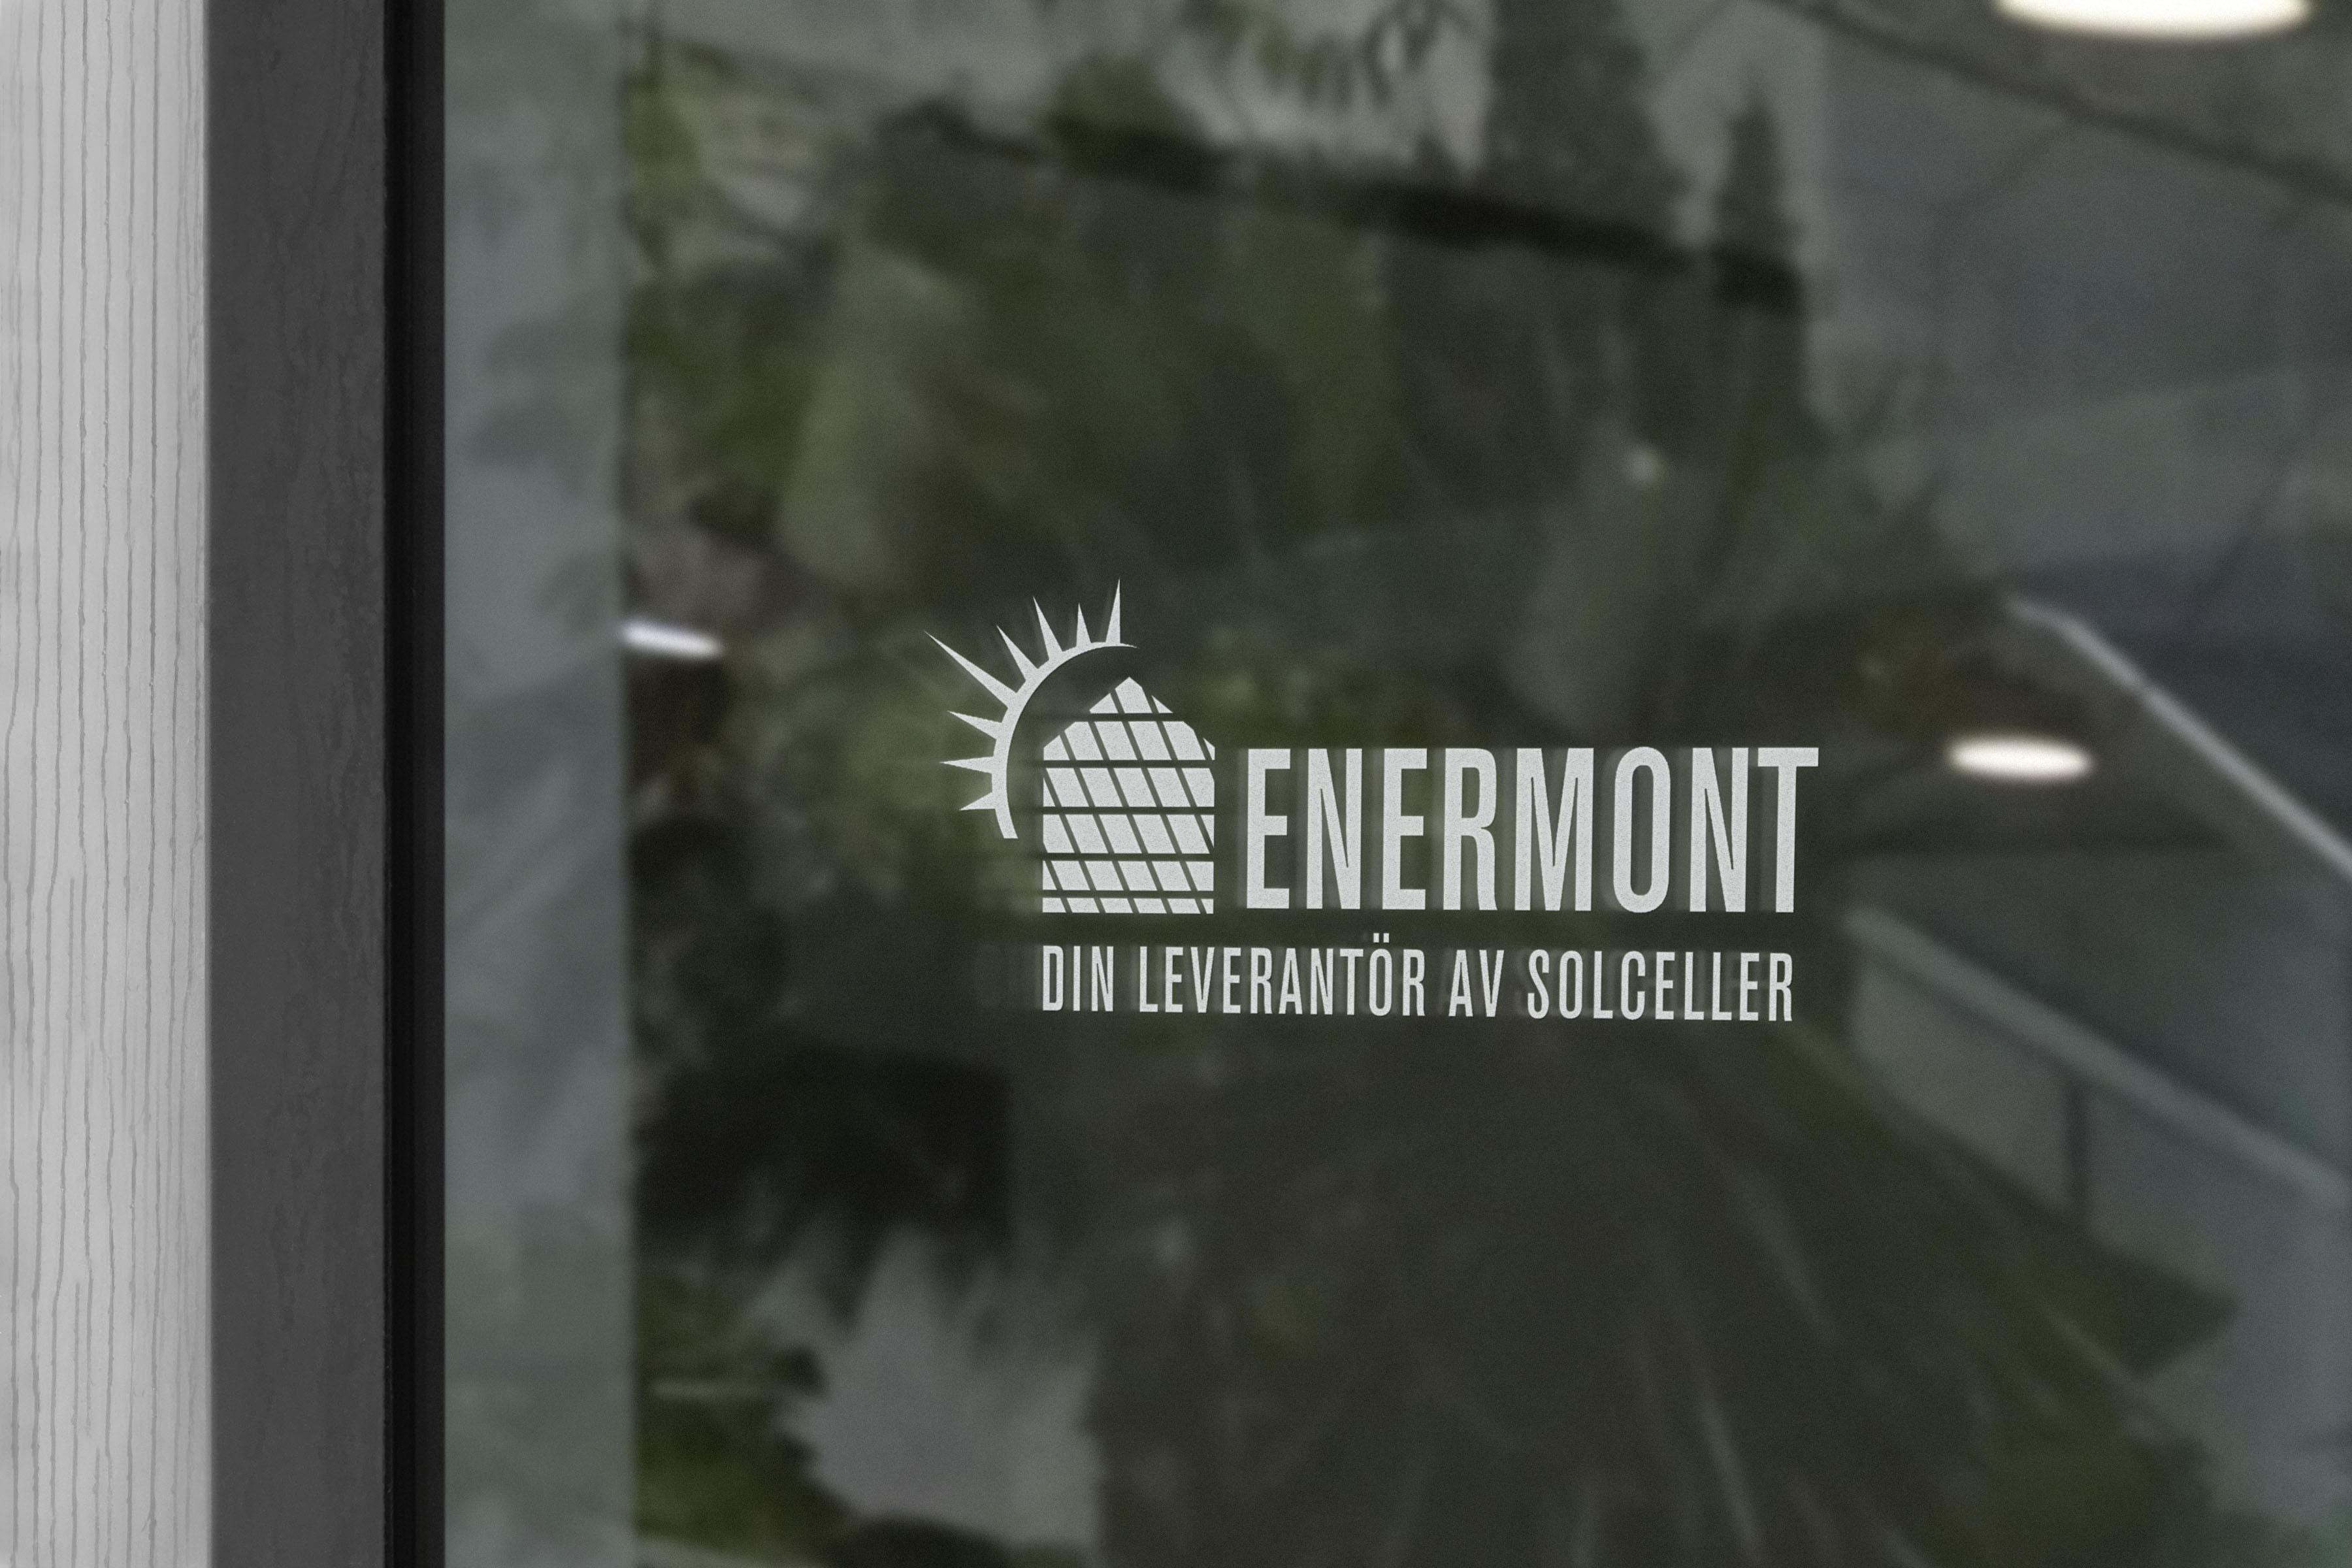 Enermont-logotyp på ett fönster